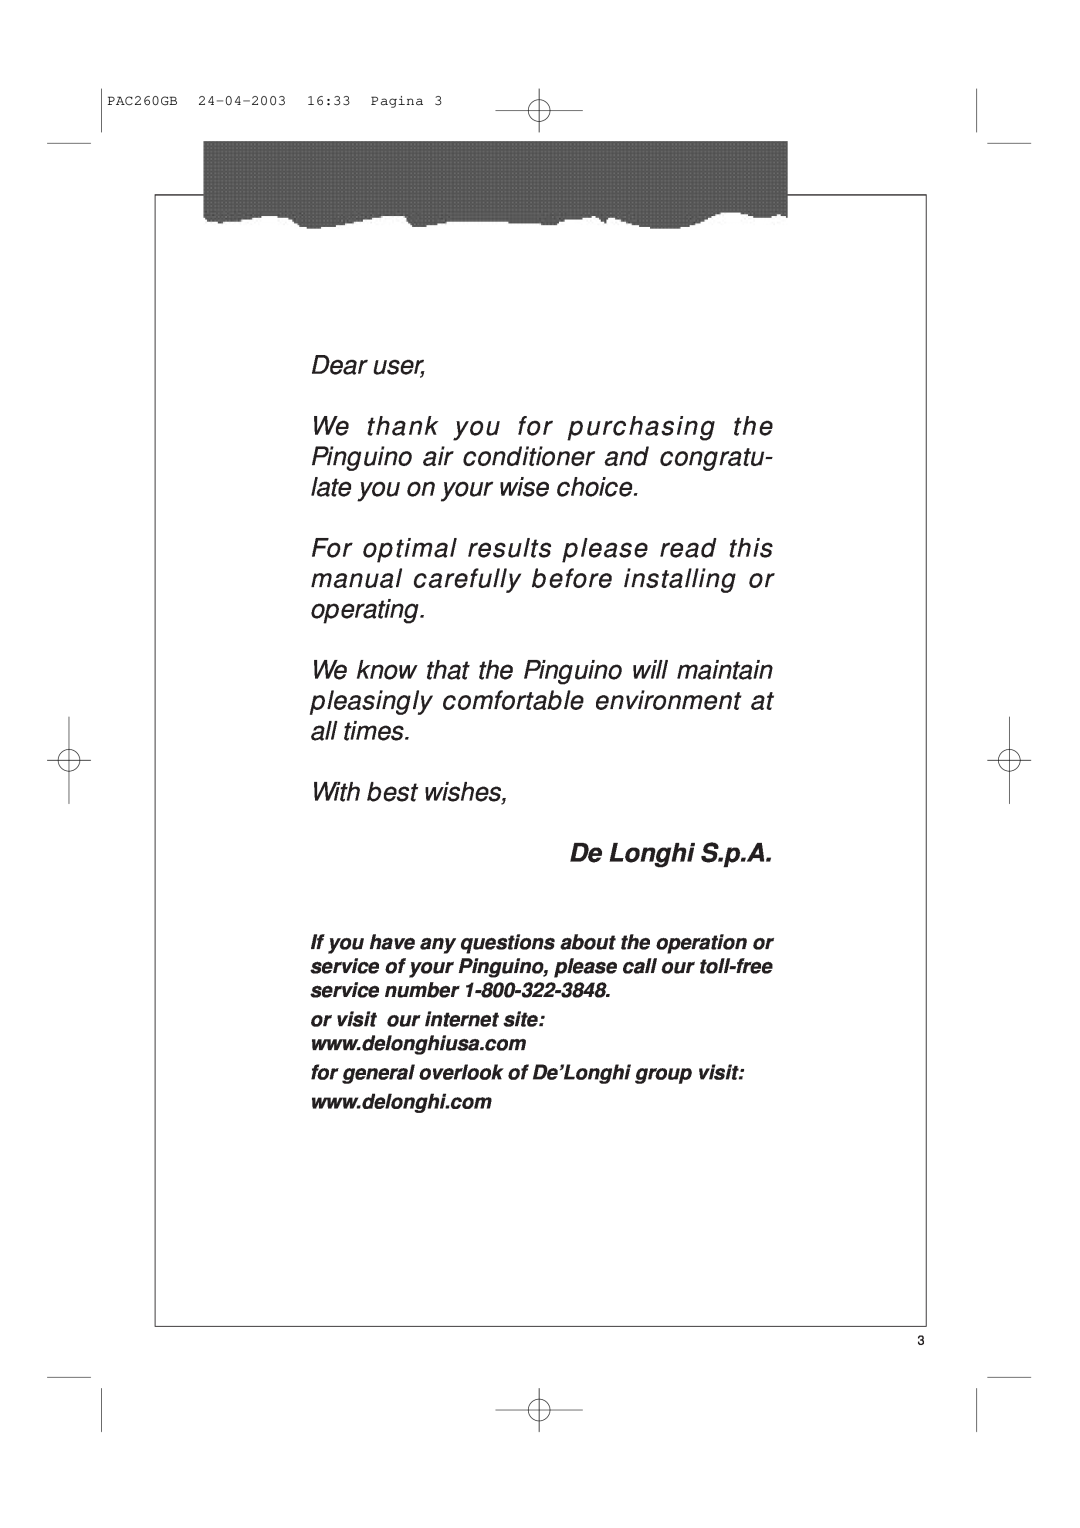 DeLonghi PAC260 manual De Longhi S.p.A 